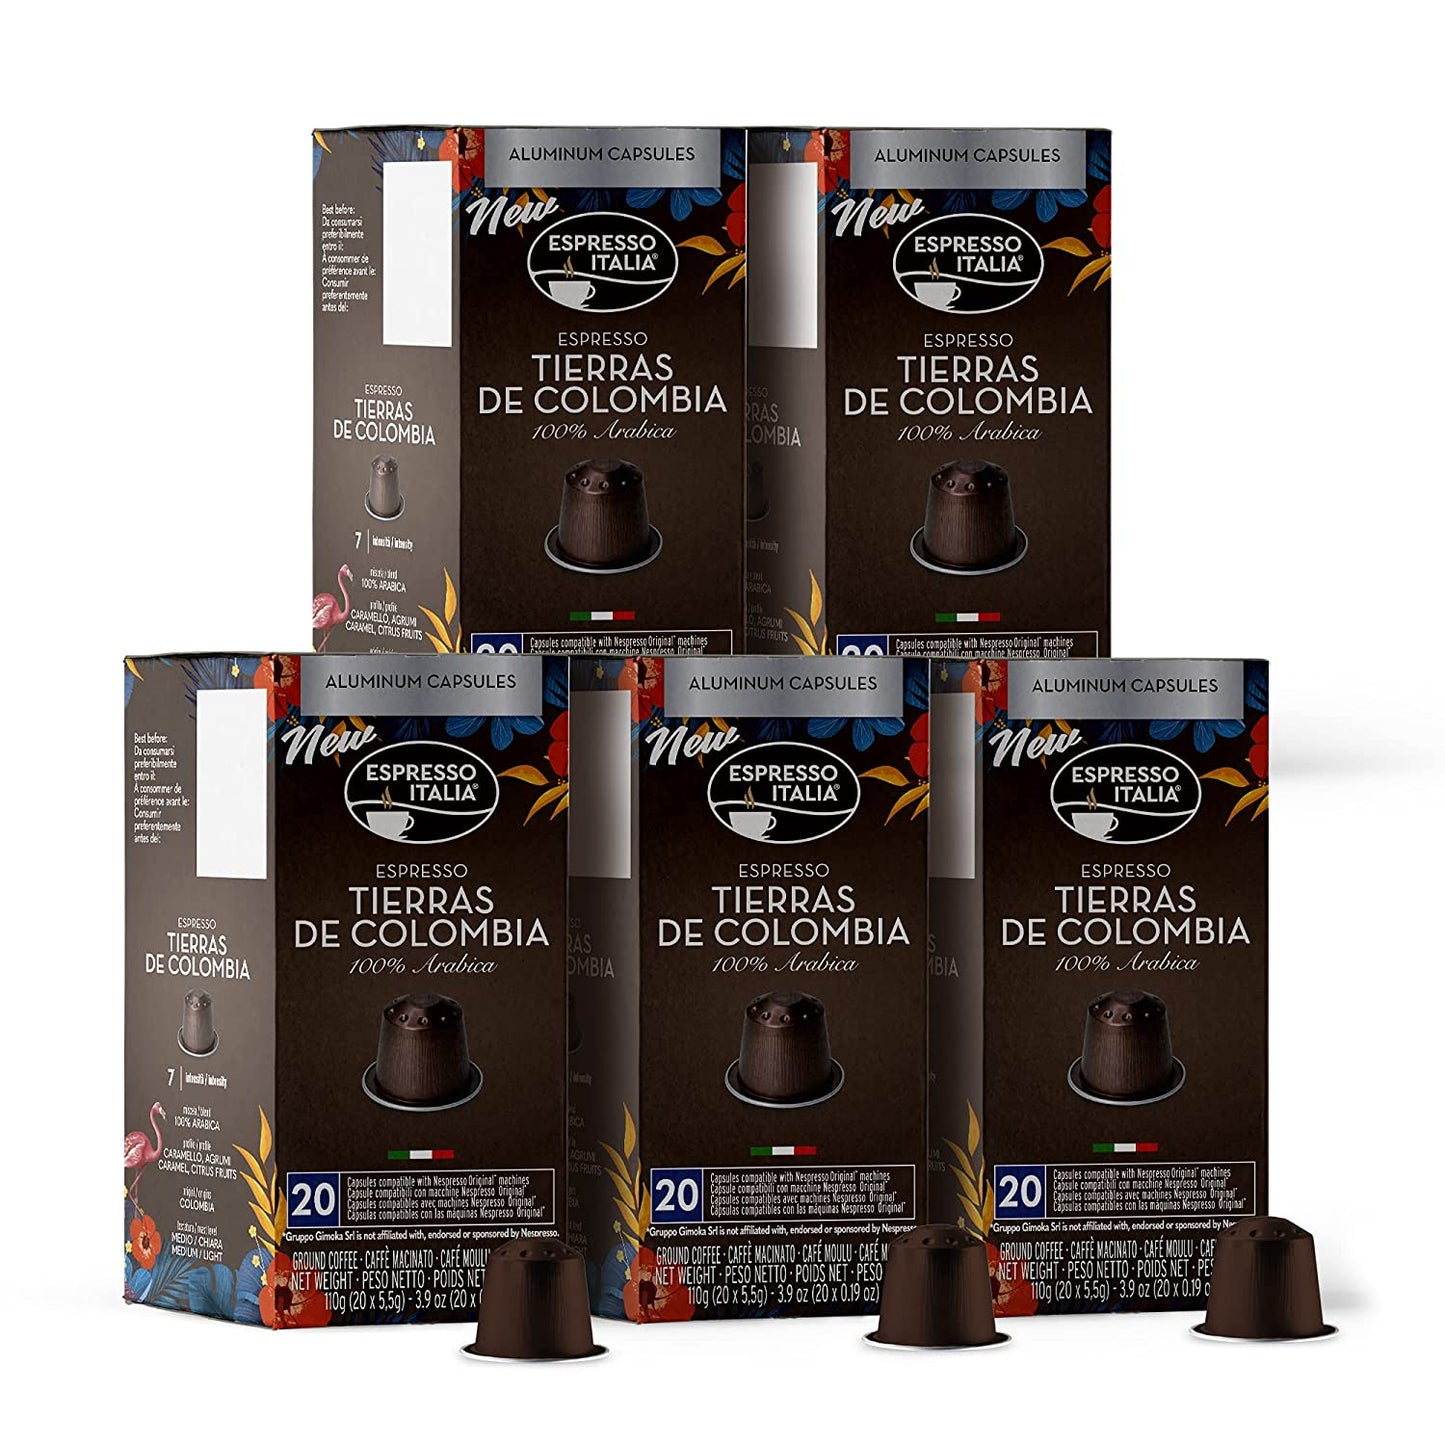 espresso italia capsules